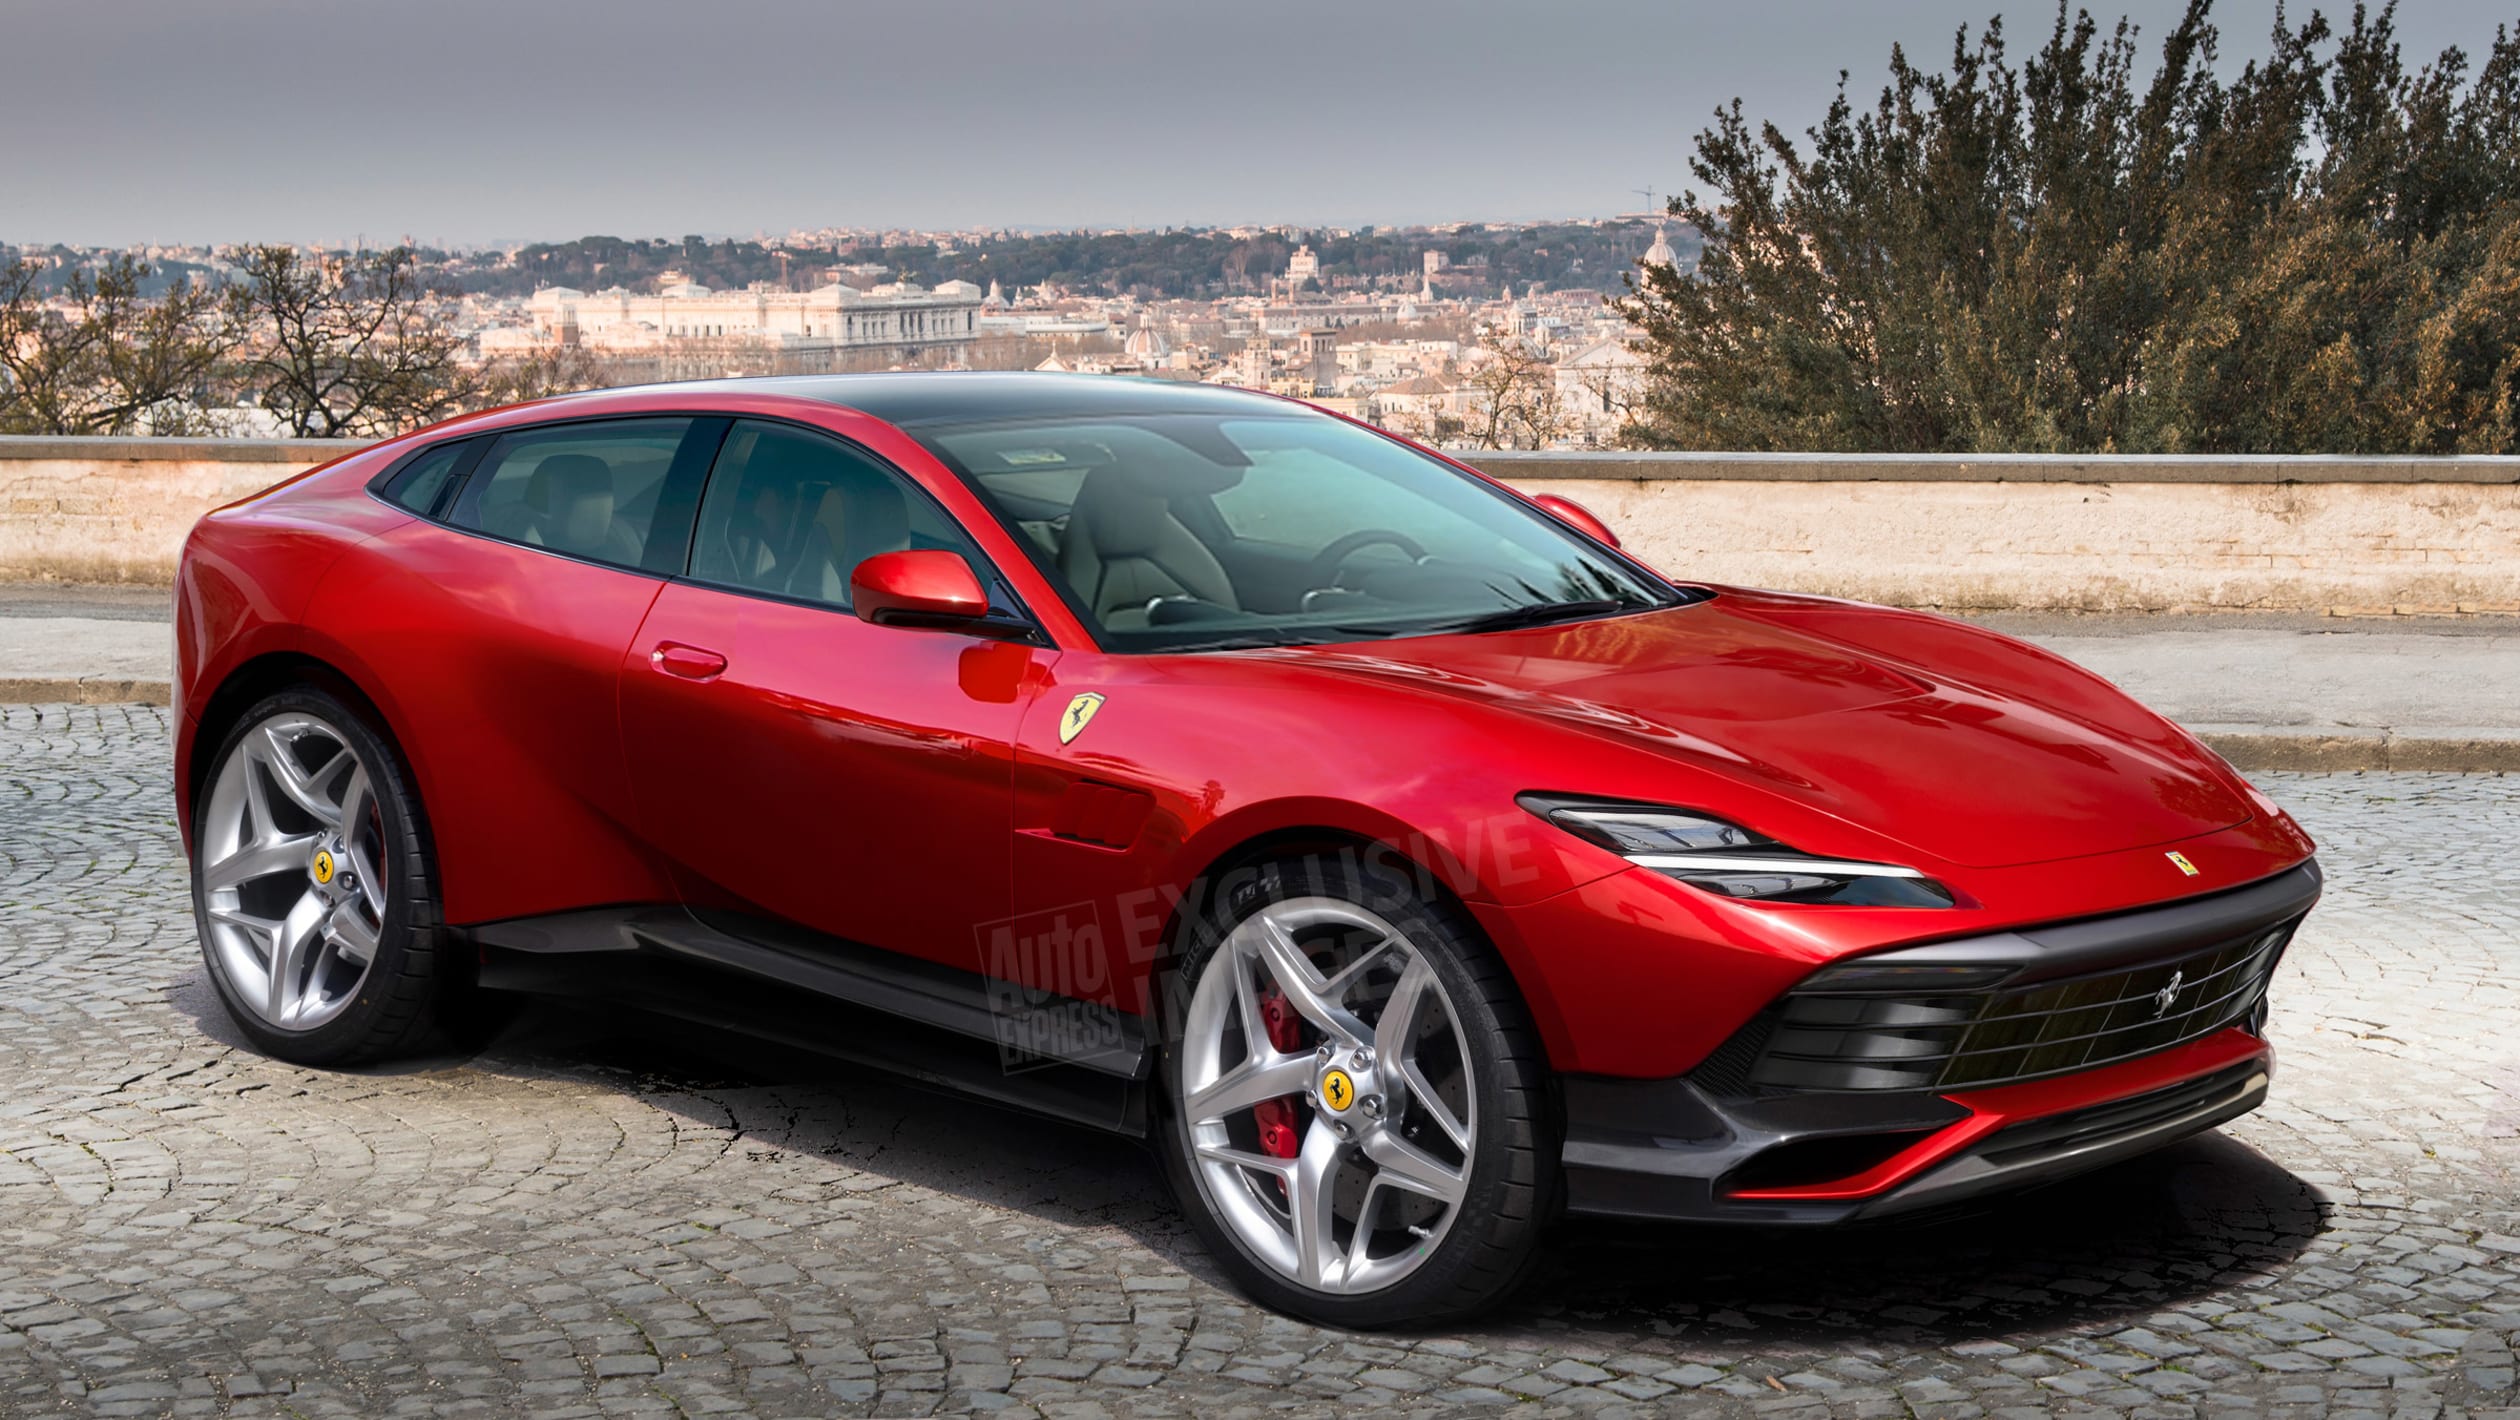 Coming Soon Ferrari Purosangue SUV Automotive Daily